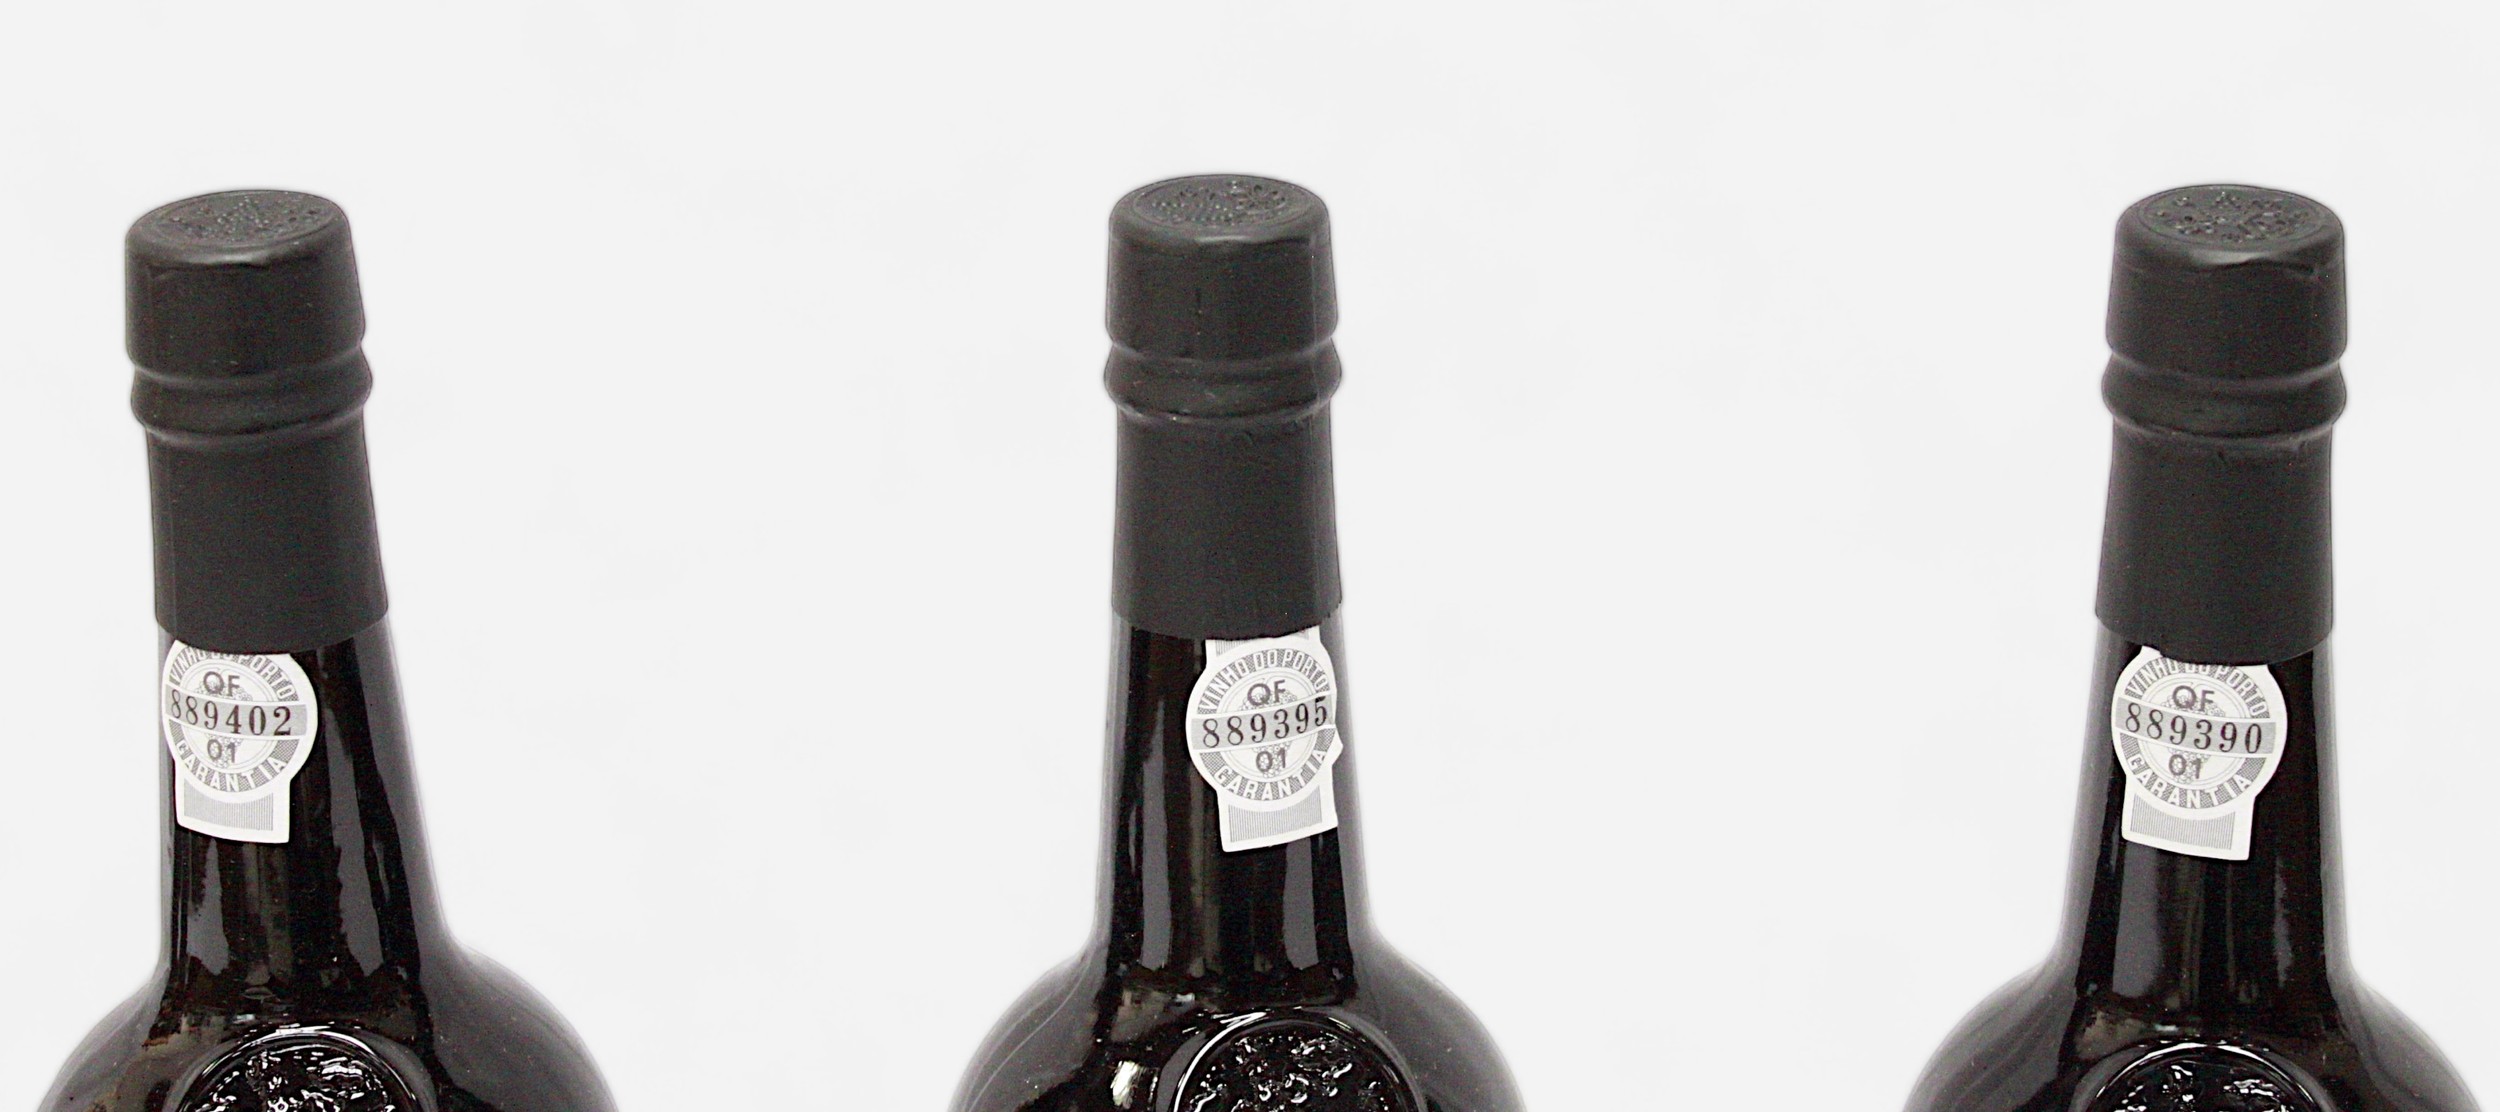 Nine bottles of Fonseca Vintage port, 1992 vintage, 20.5% vol, 75cl bottles, all sealed with labels - Image 5 of 7